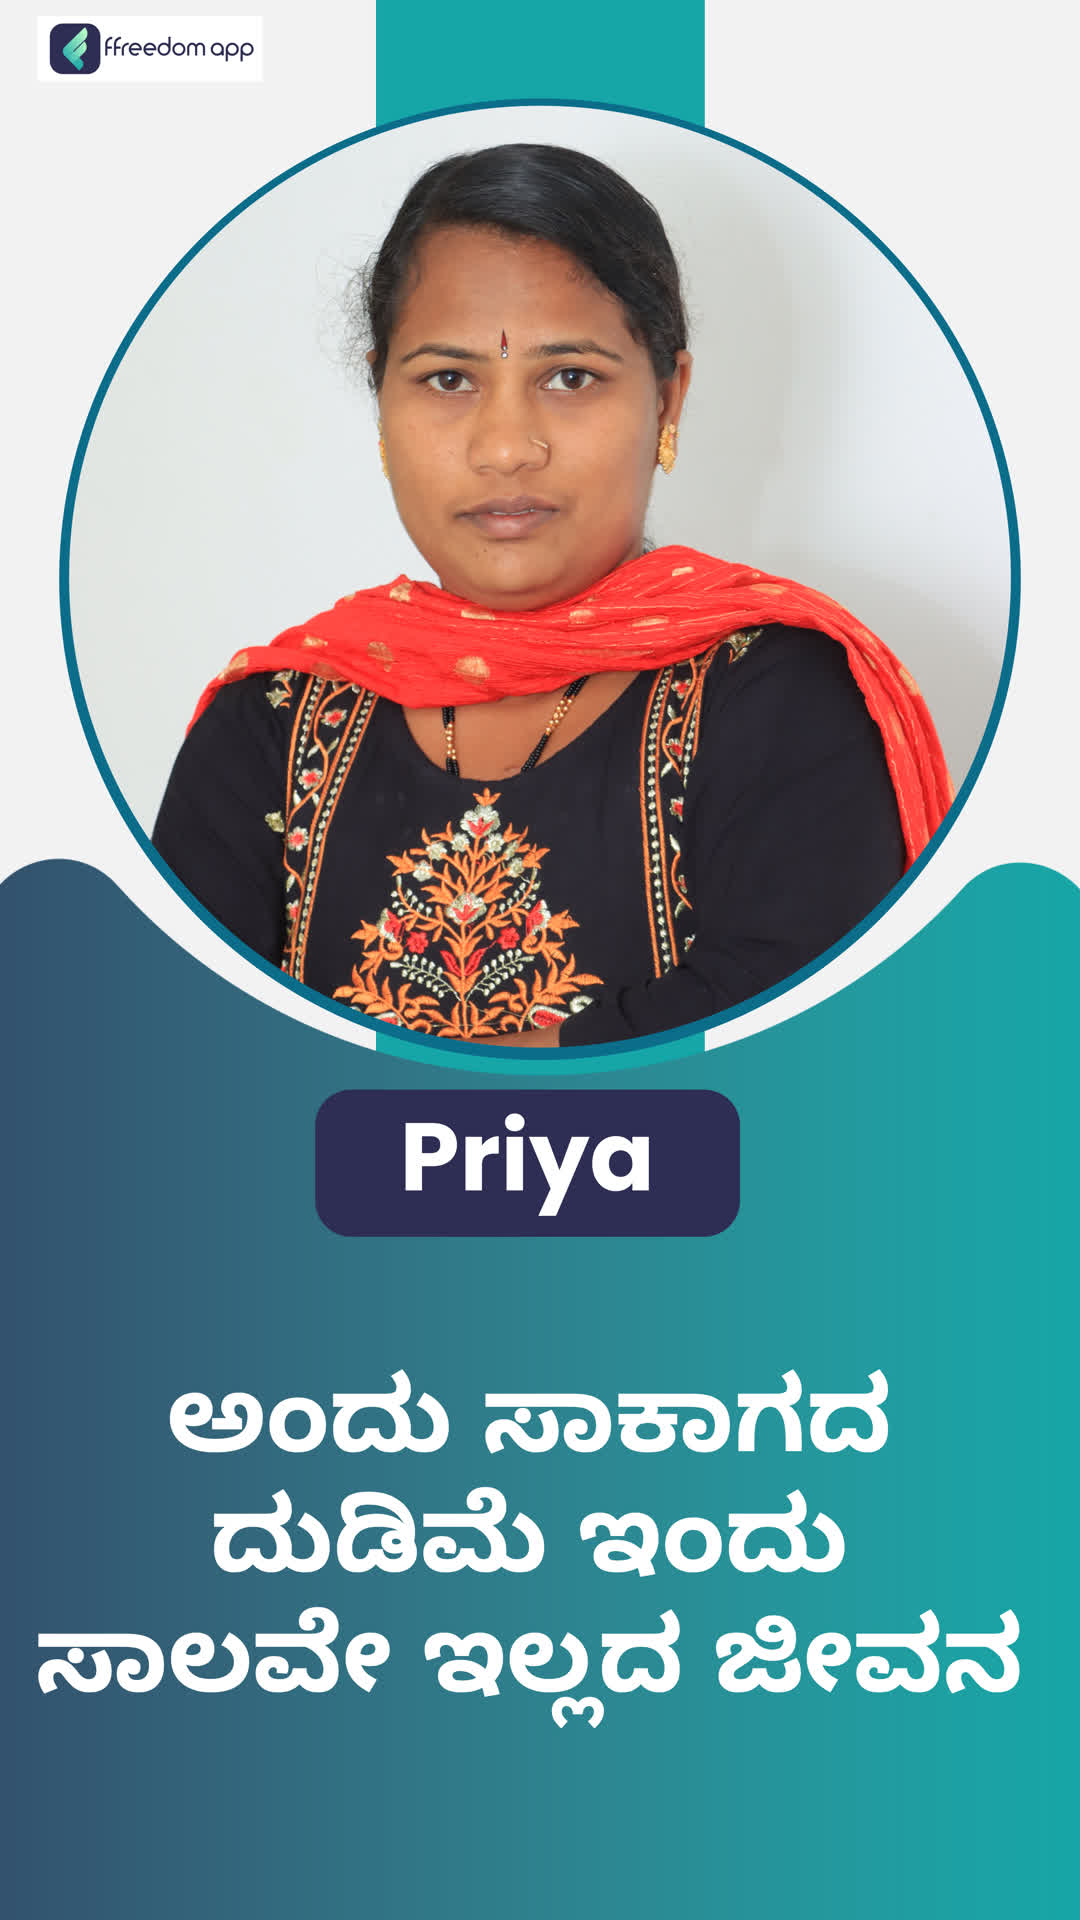 priya's Honest Review of ffreedom app - Shimoga ,Karnataka